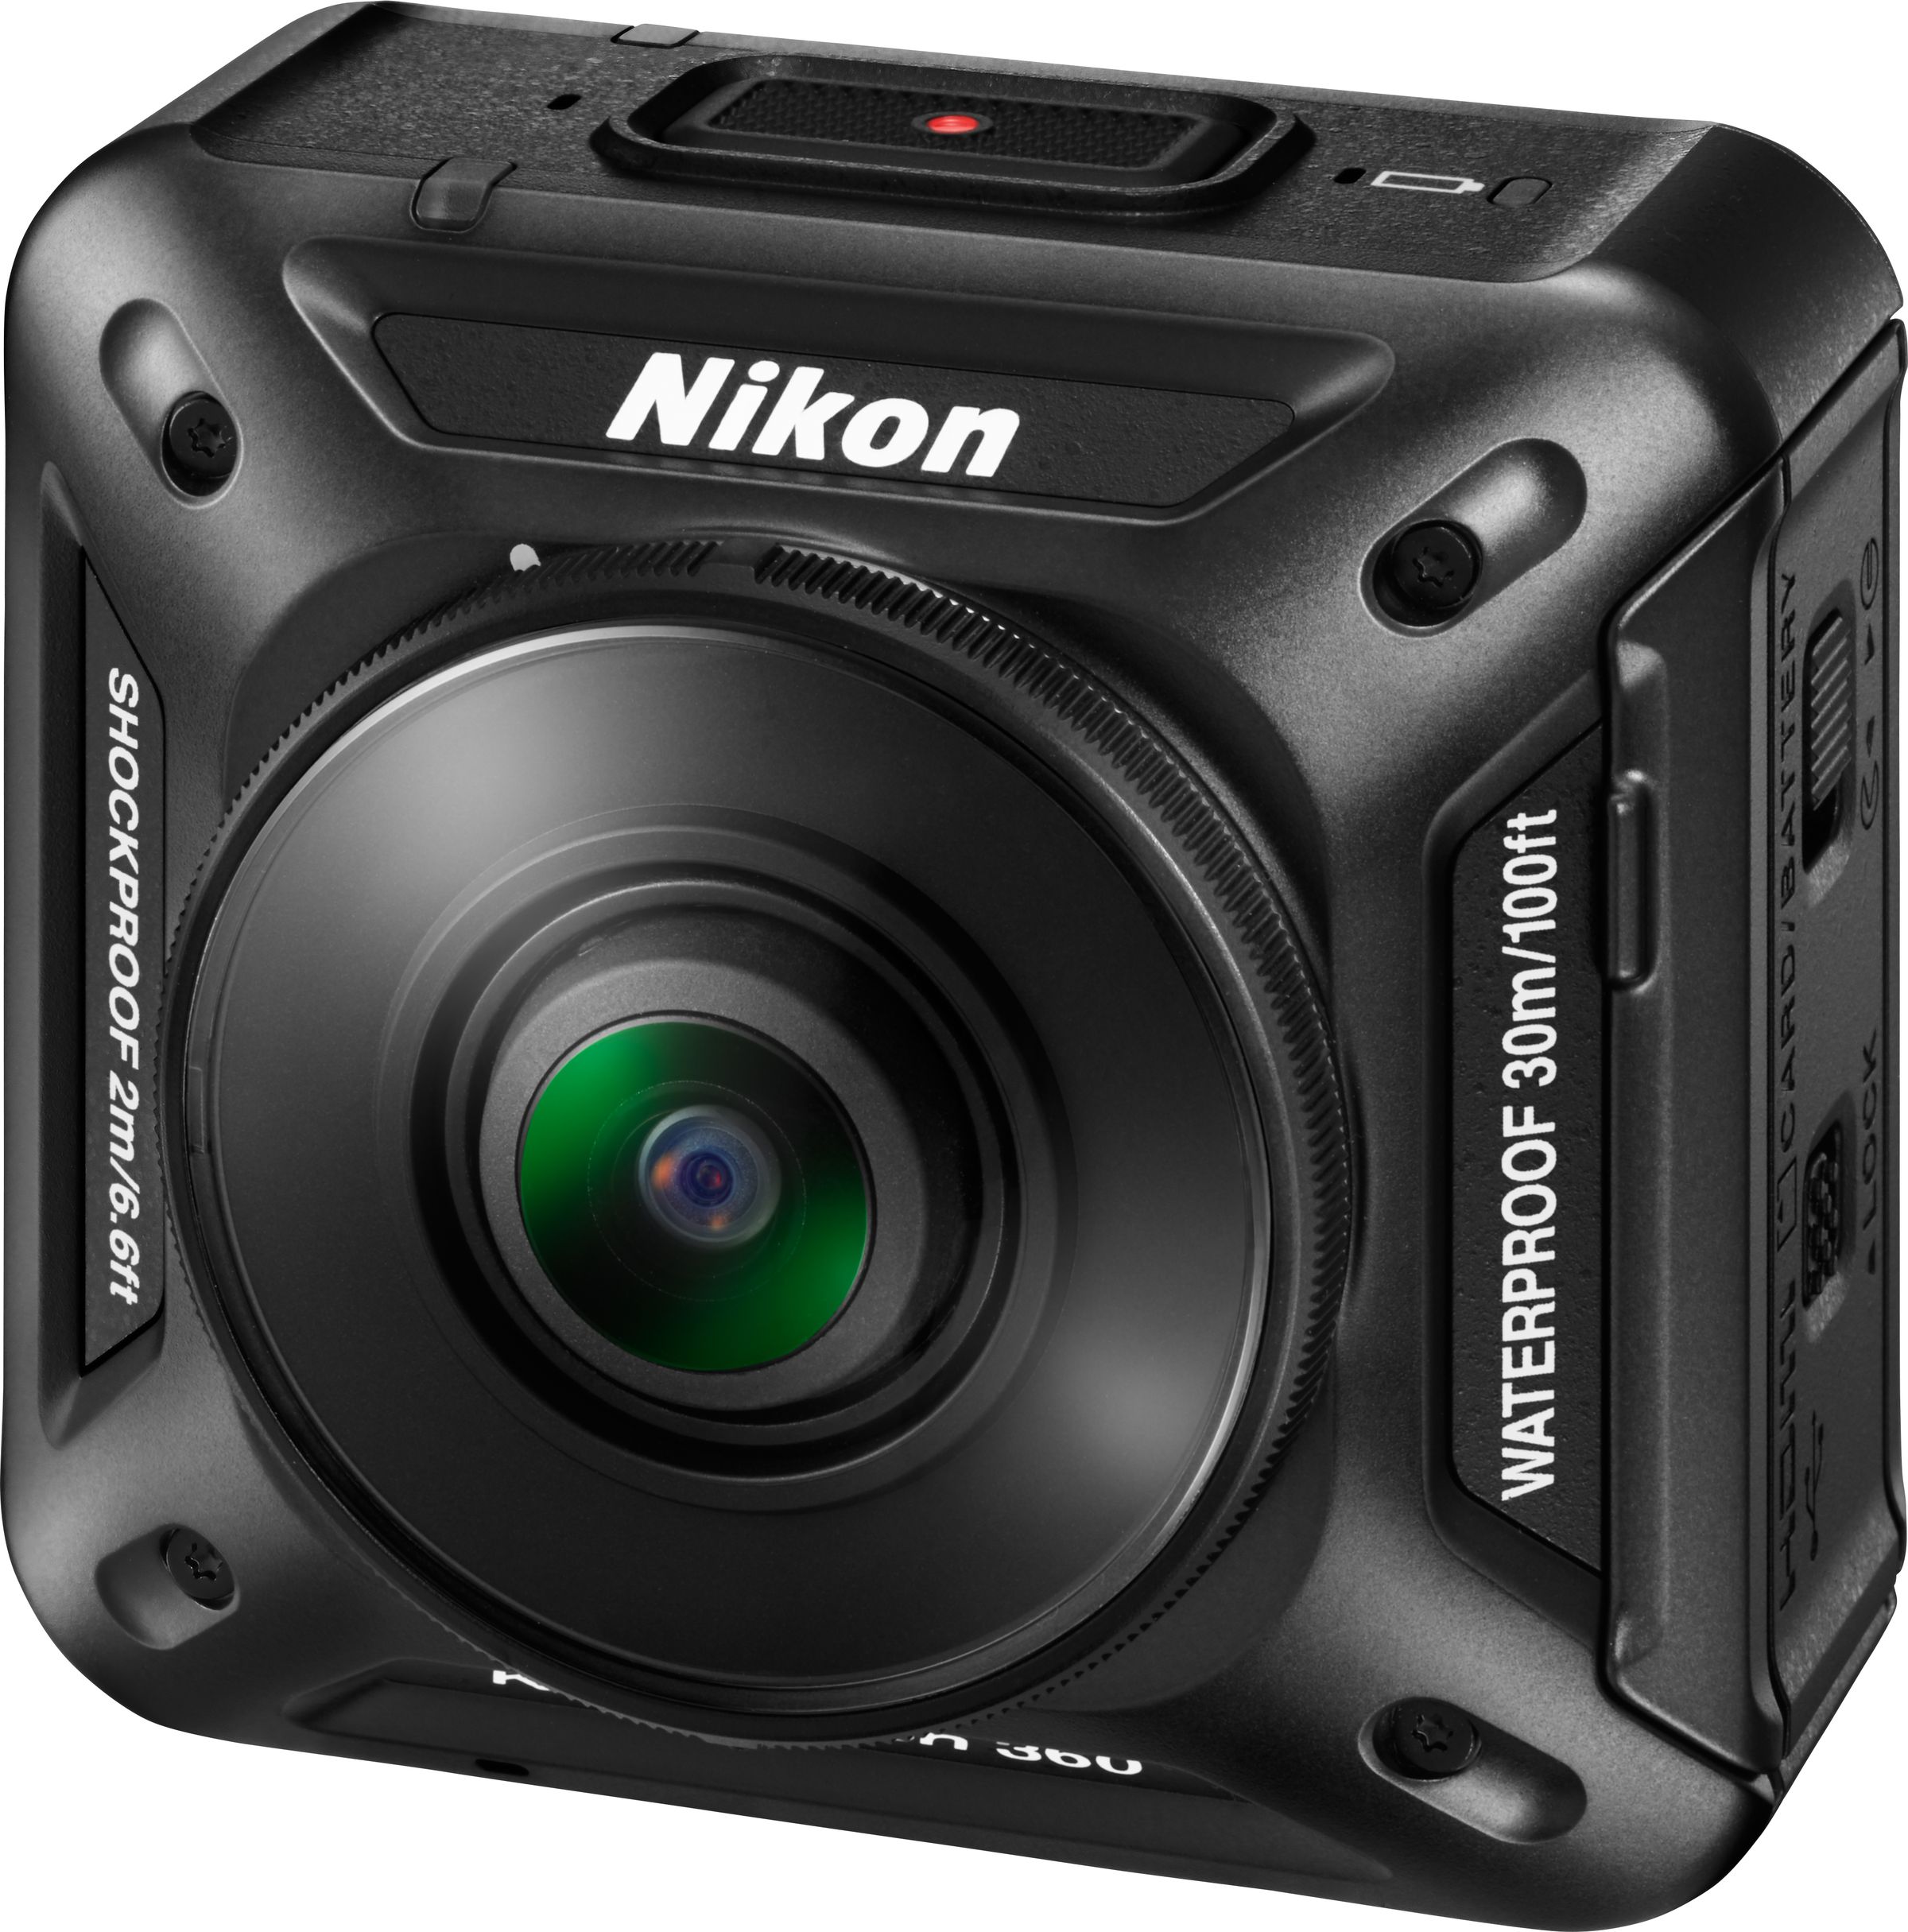 Nikon's 360-degree action camera in photos